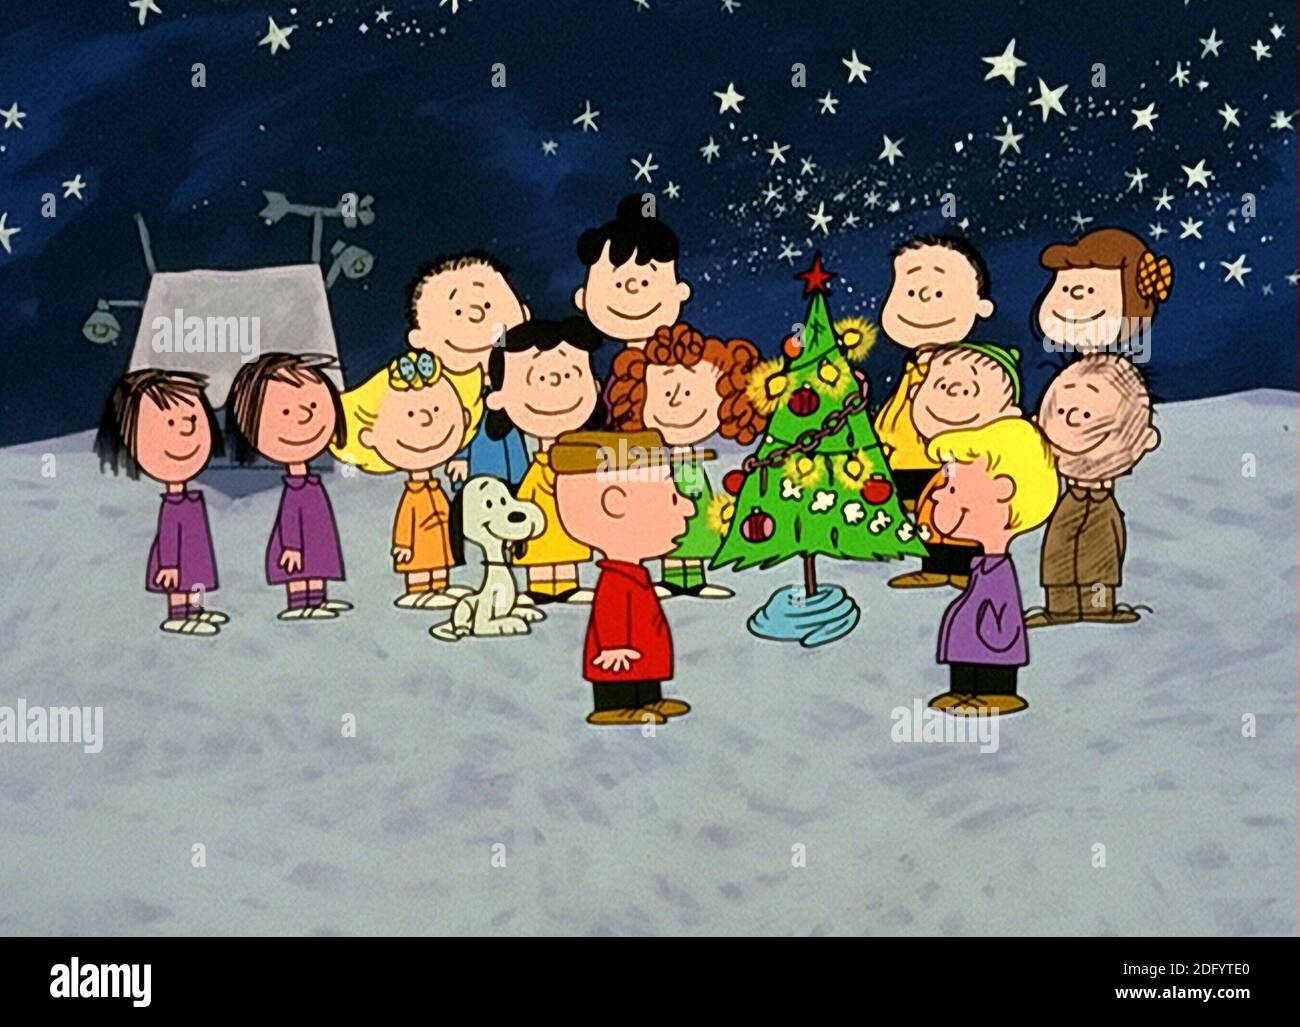 A Charlie Brown Christmas Stock Photo